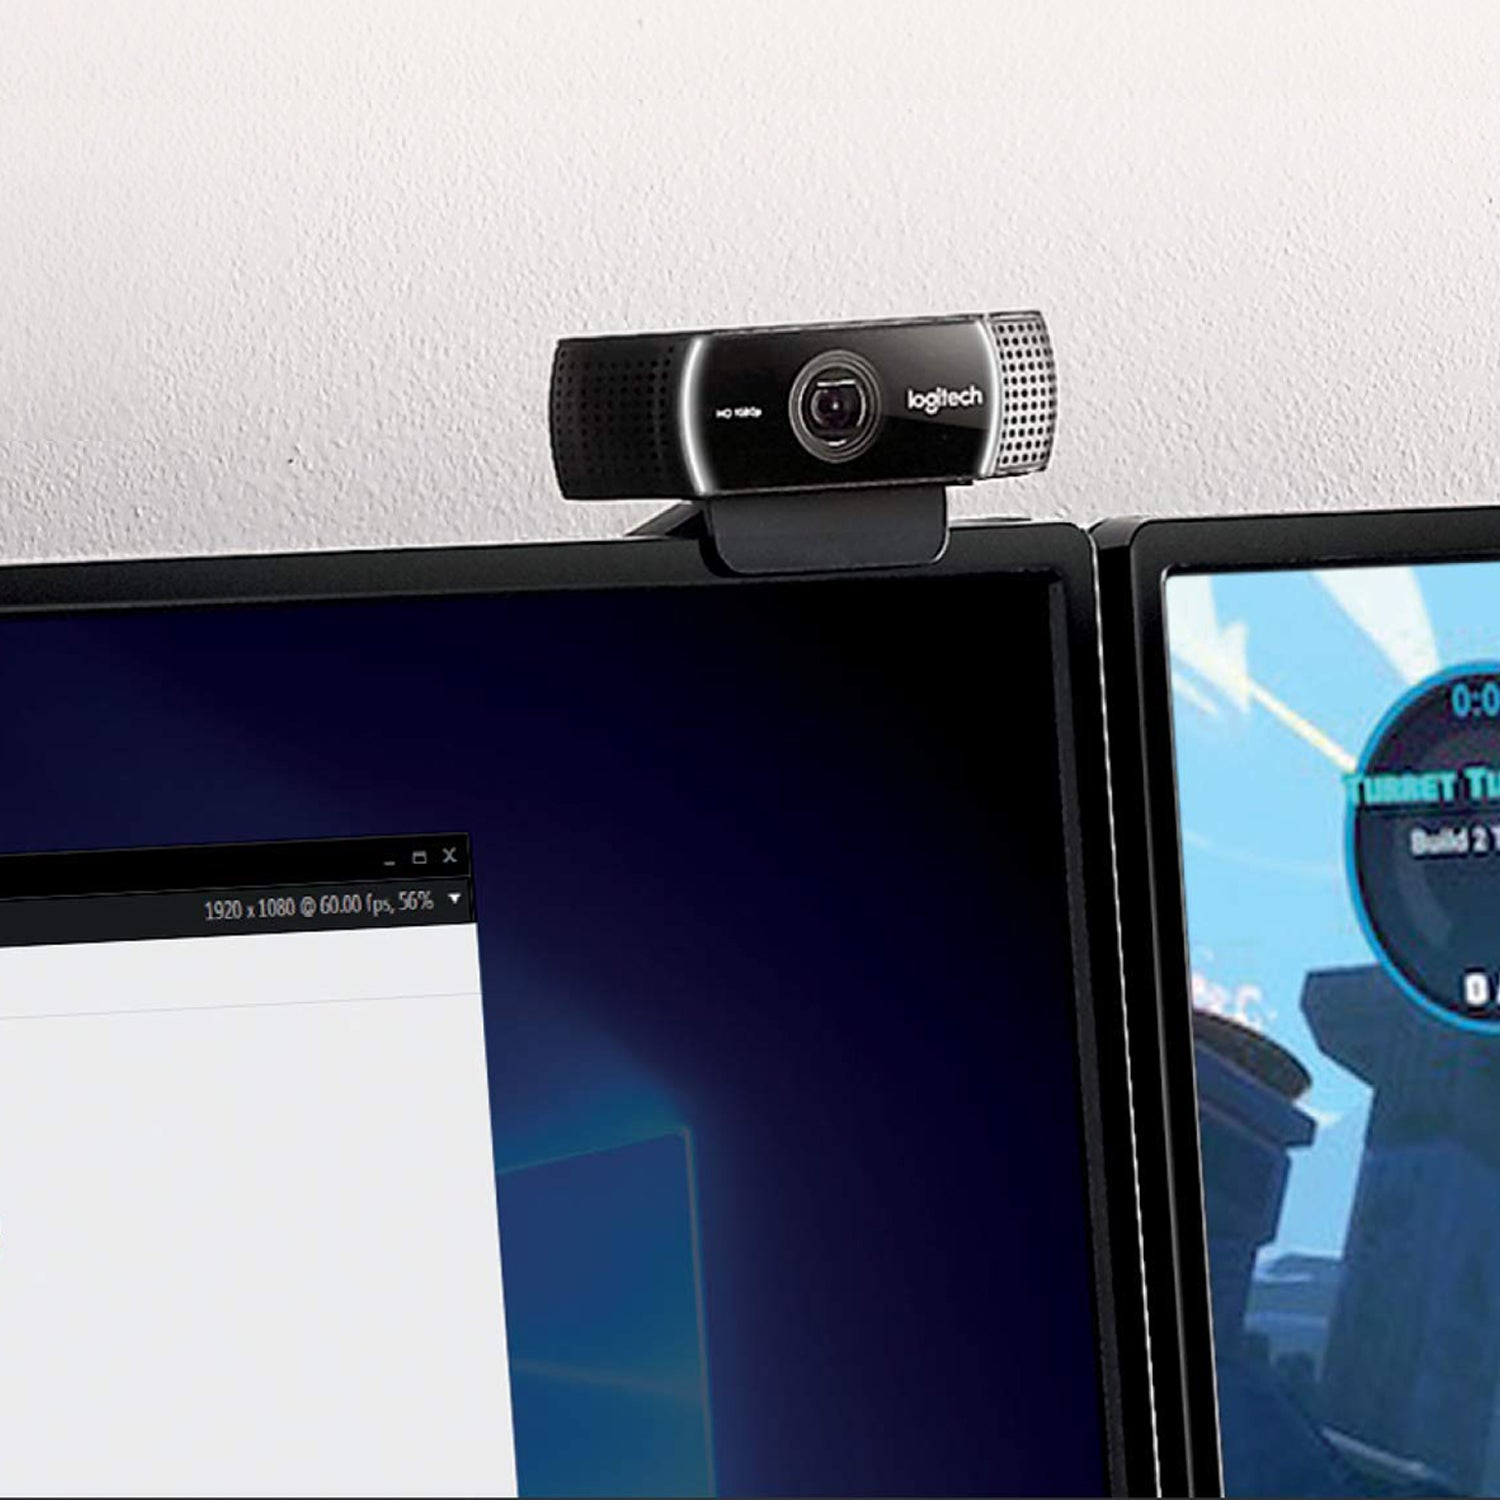 Logitech HD Pro Webcam C922 Webkamera mit Gewinde